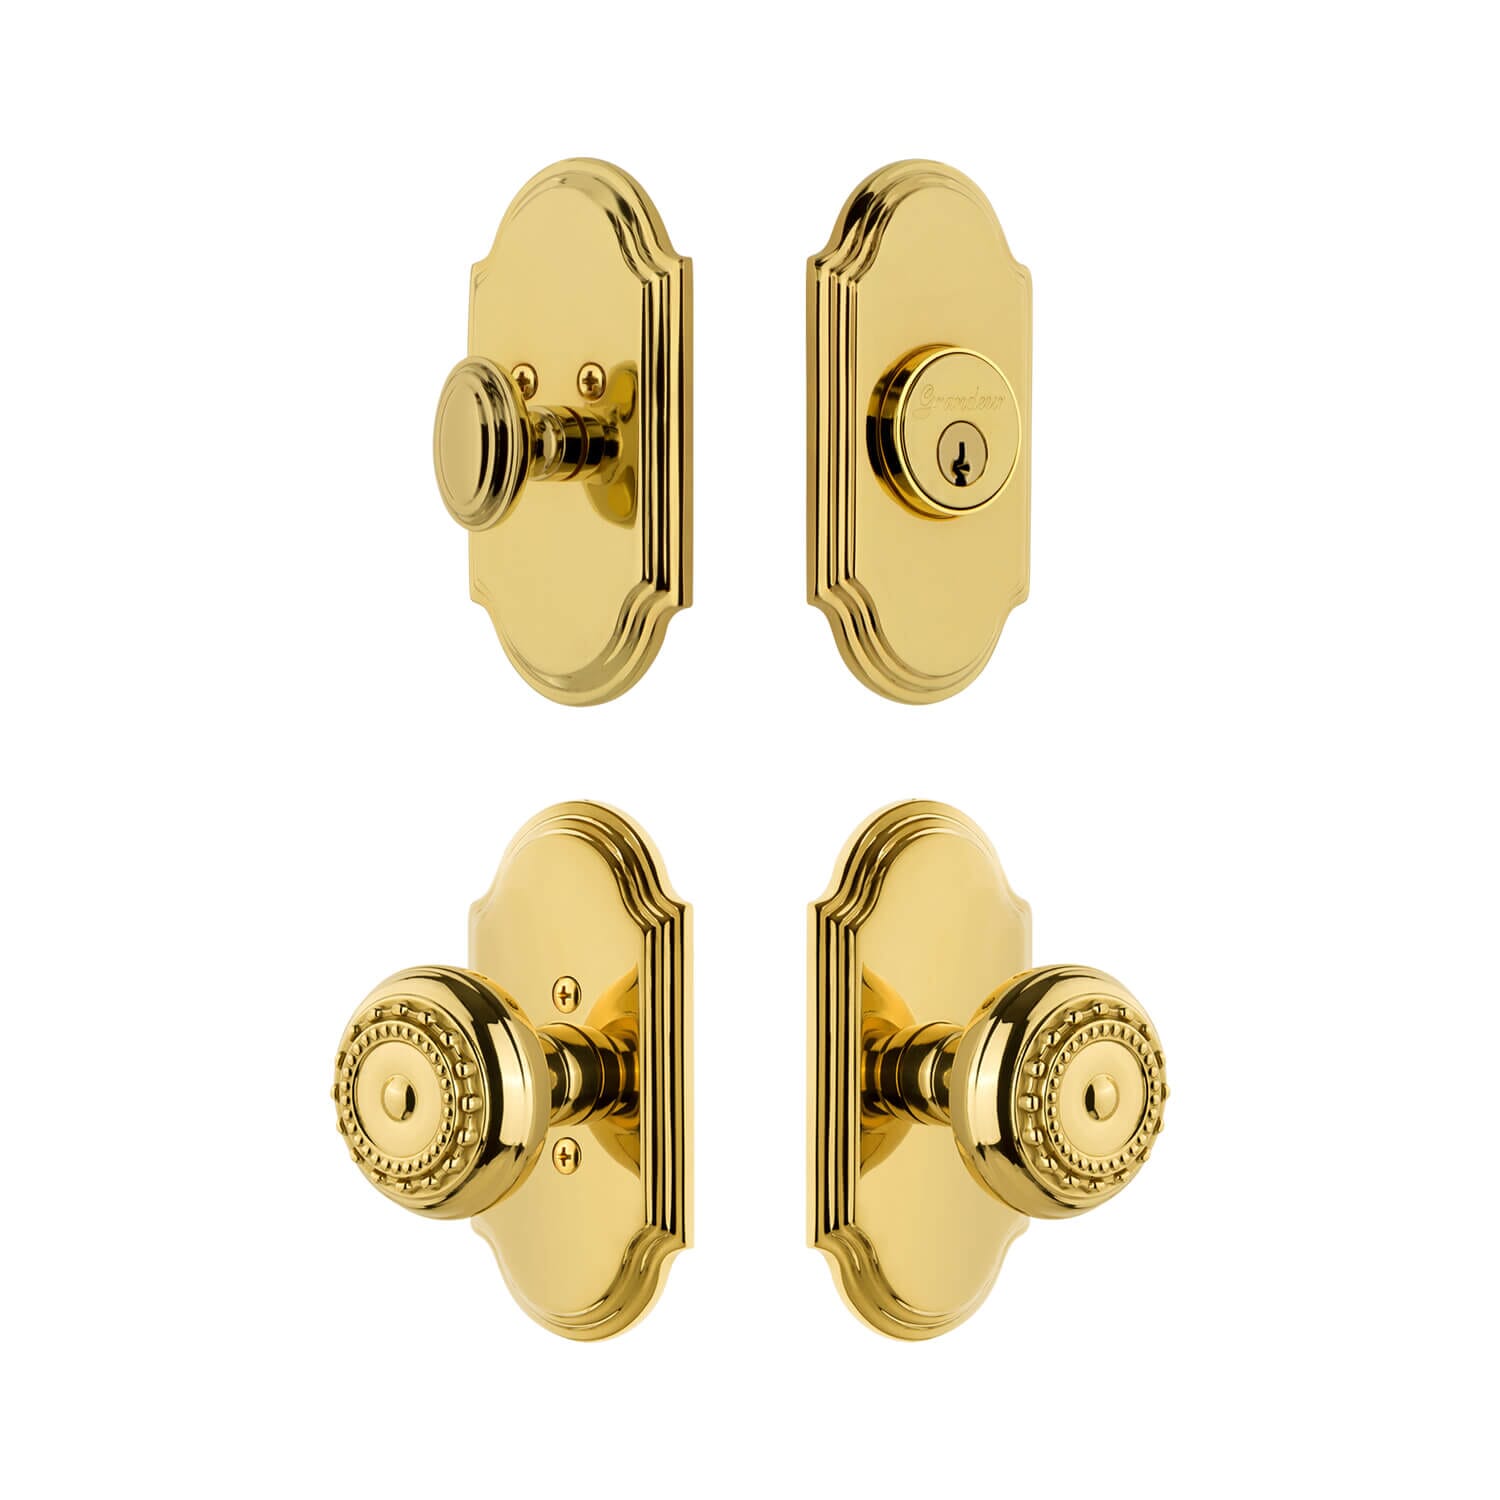 Small Brass Door Knob - Antique Gold - Round